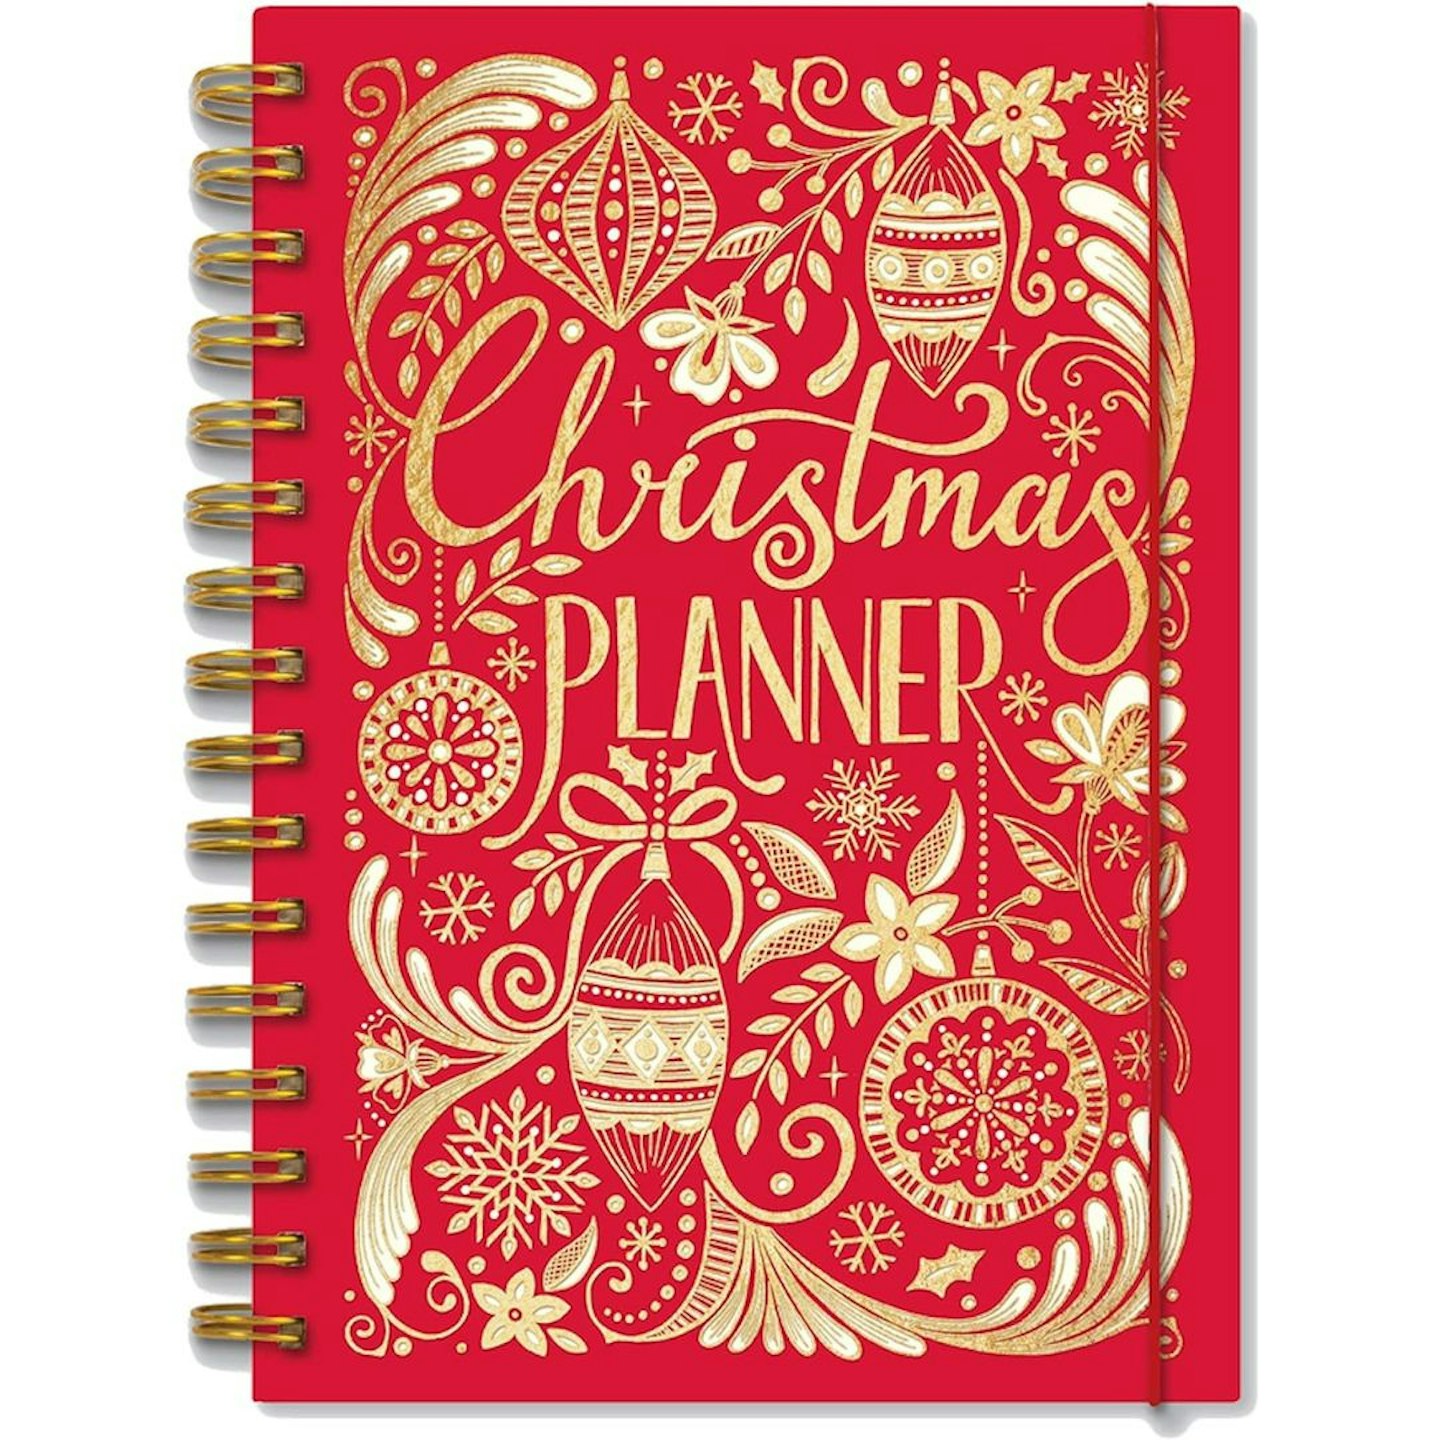 The best Christmas planners: Rachel Ellen A5 Christmas 2019 Organiser Book